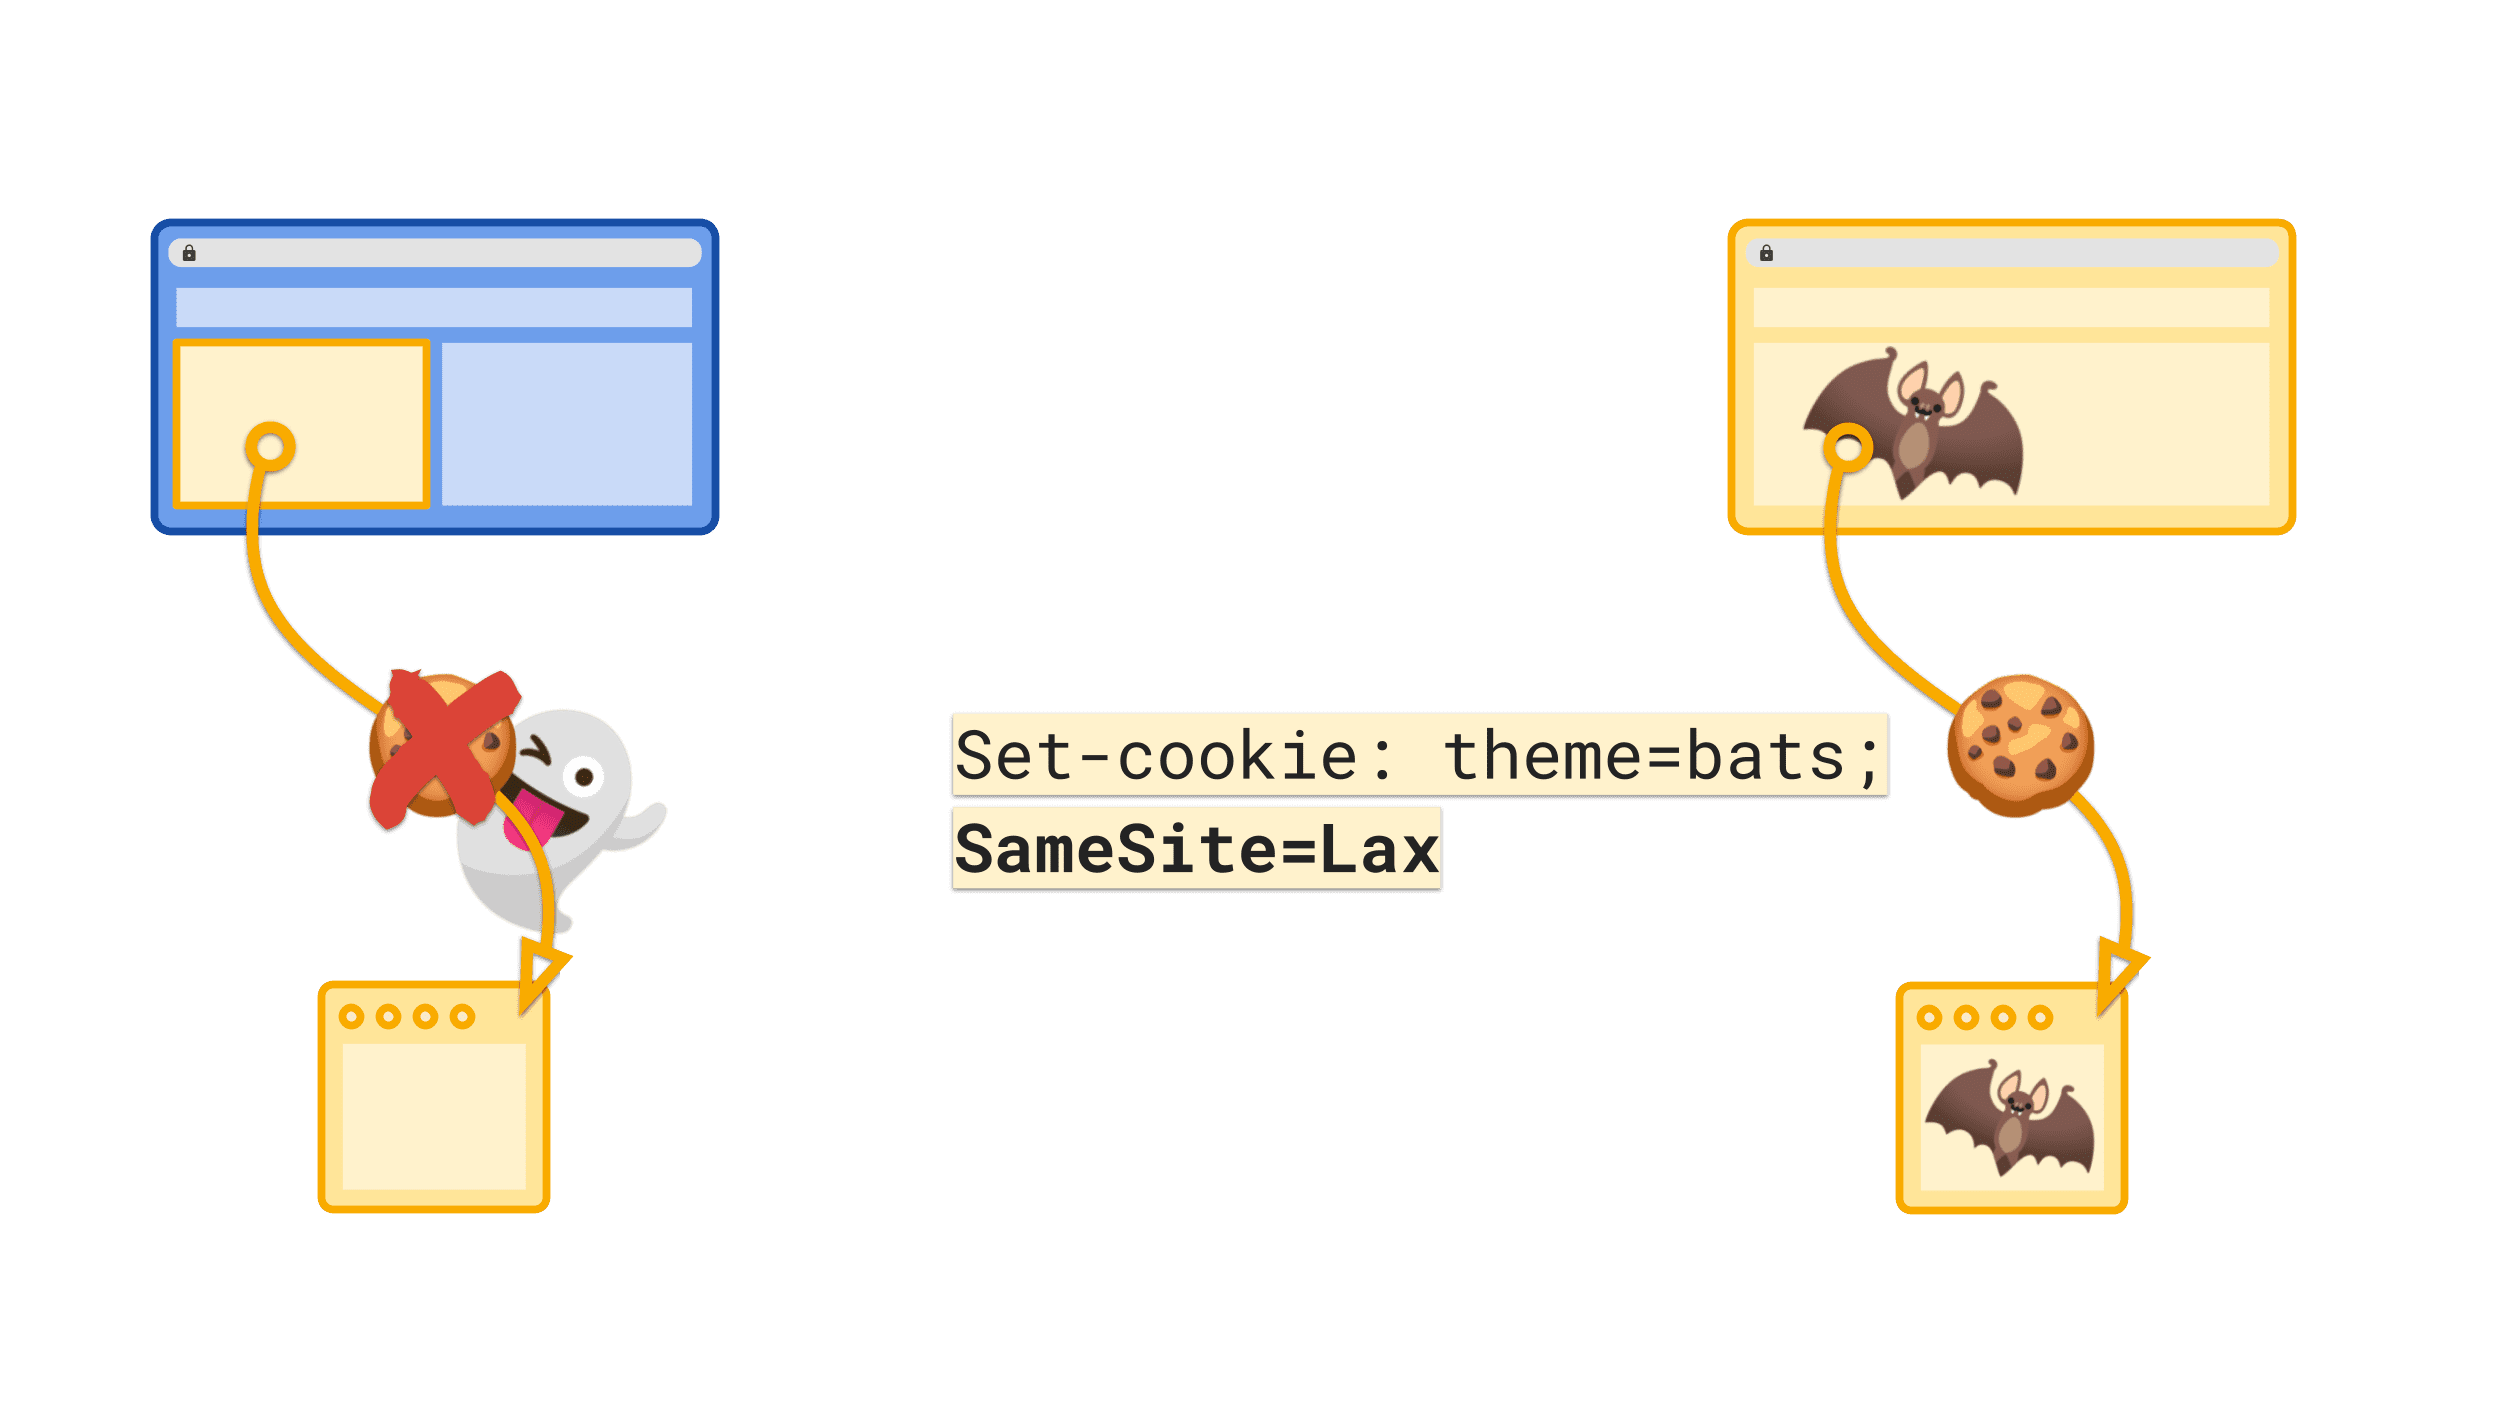 SameSite=Lax वैल्यू की डिफ़ॉल्ट वैल्यू, तीसरे पक्ष में भेजी जाने वाली कुकी को रोकती है